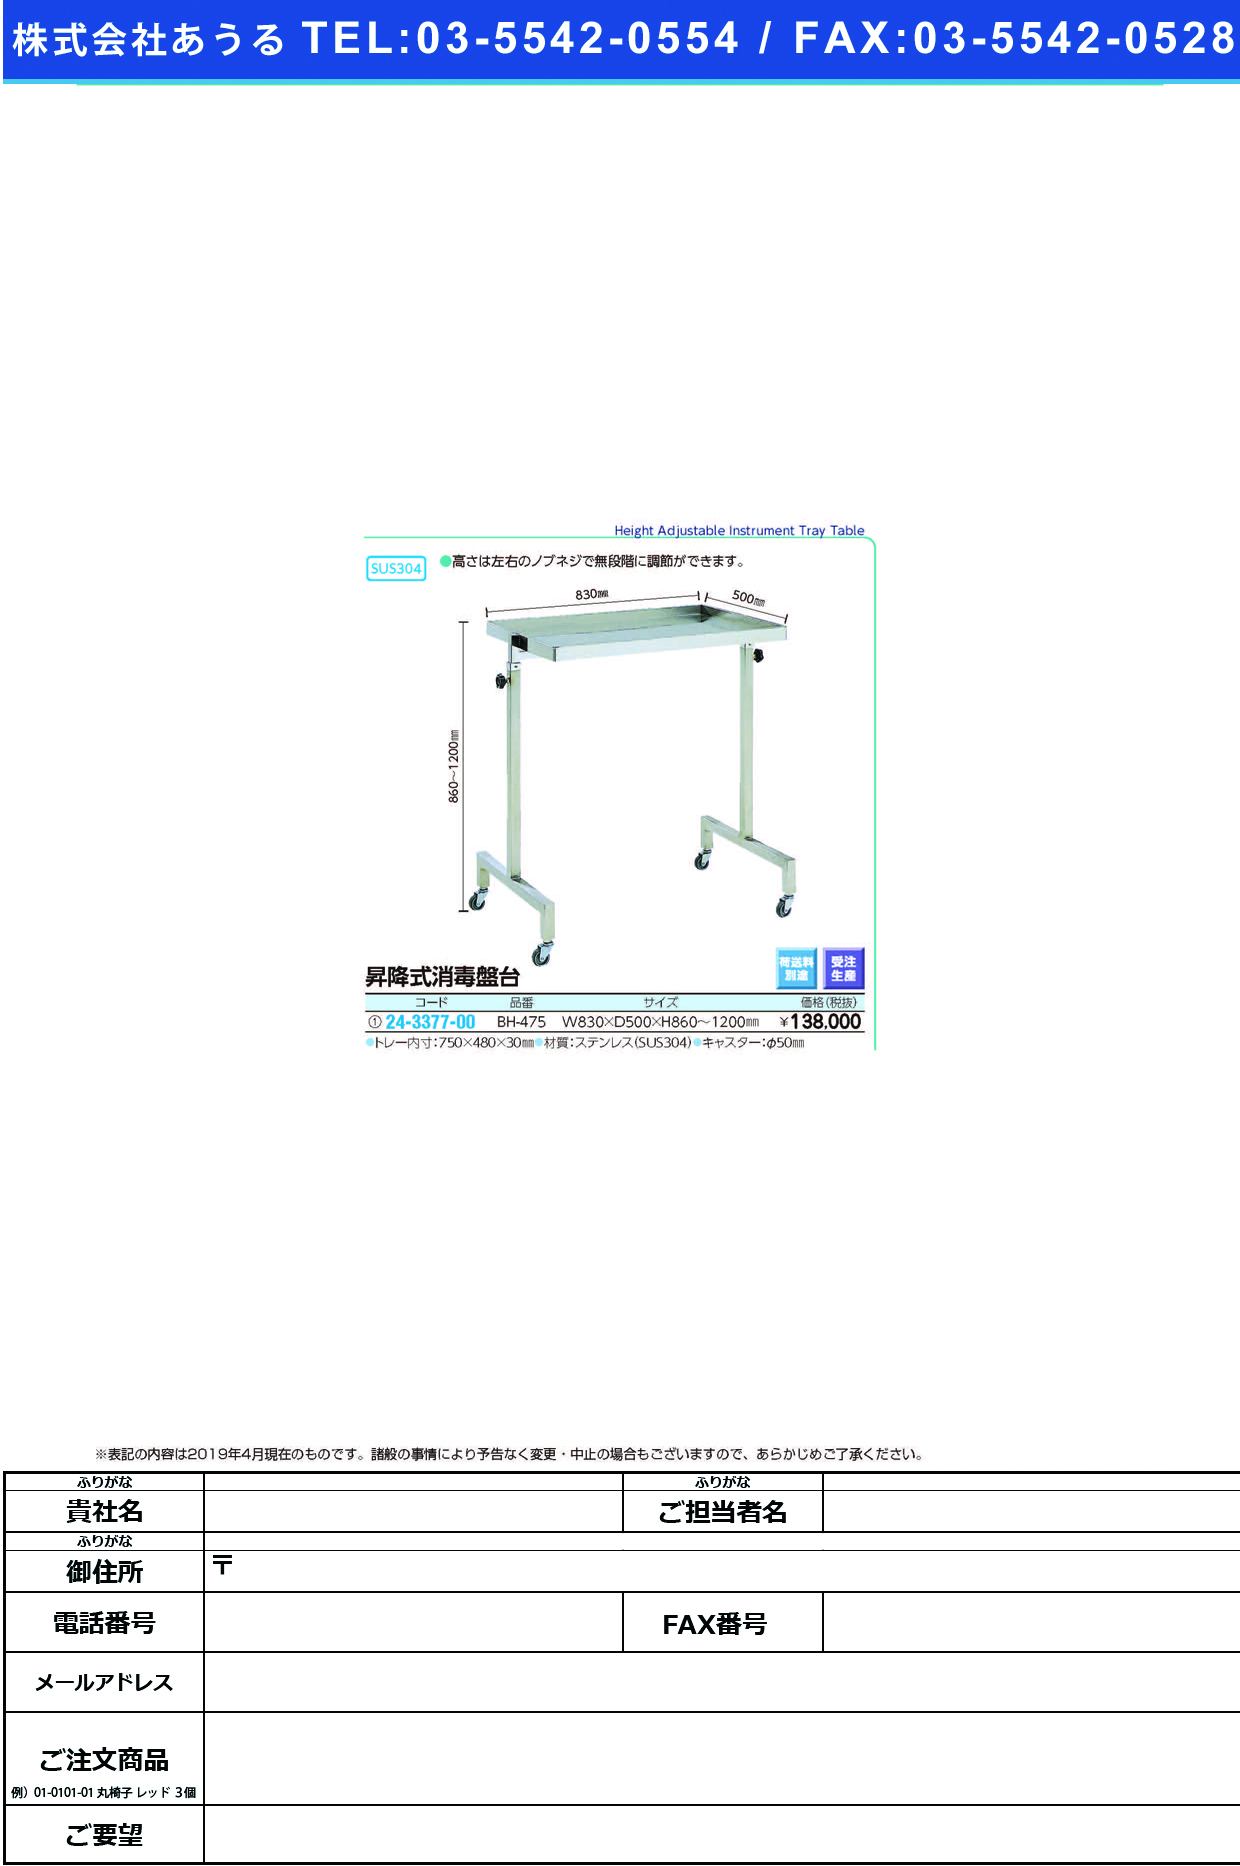 (24-3377-00)昇降式消毒盤台 BH-475 ｼｮｳｺｳｼｷｼｮｳﾄﾞｸﾊﾞﾝﾀﾞｲ【1台単位】【2019年カタログ商品】